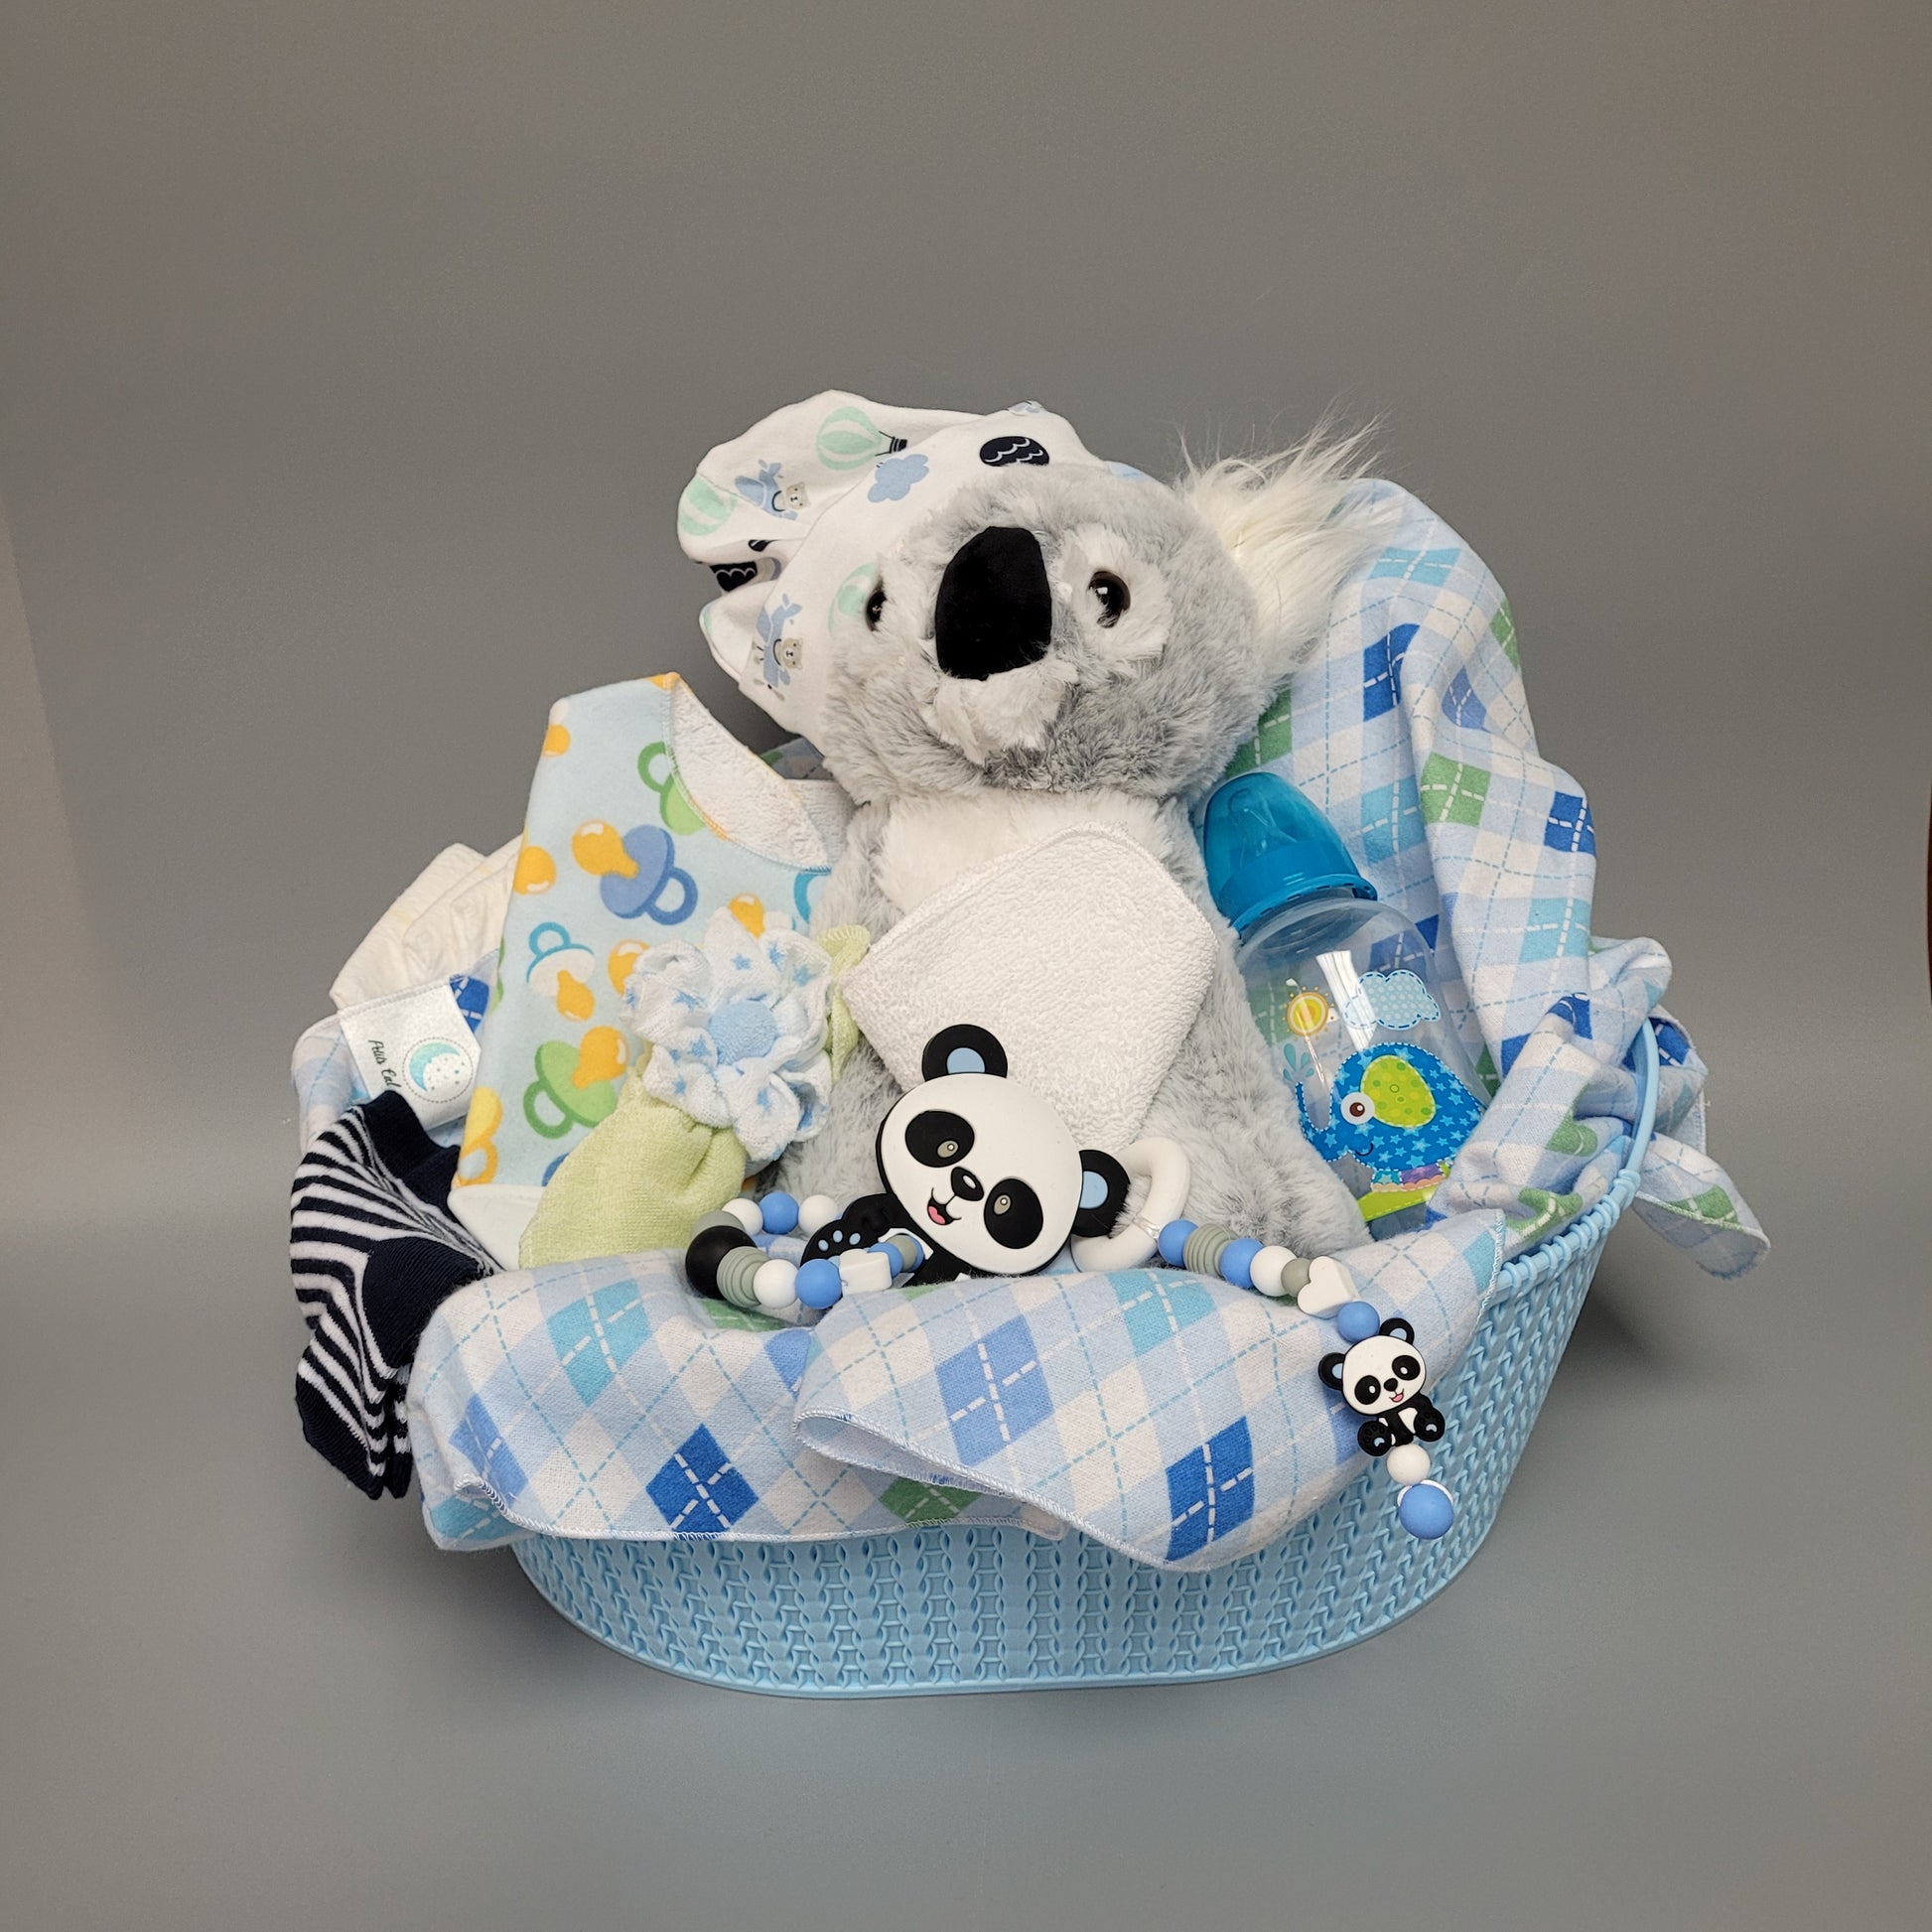 Ensemble cadeau pour babyshower dans un panier bleu avec un toutou koala. Contient une couverture de flanelle bleu un bavoir de dentition, un biberon, des débarbouillettes disposé en fleur, un bonnet, des bas de coton. Contient aussi des couches de bébé de taille #2 et des jouet de dentition en silicone.